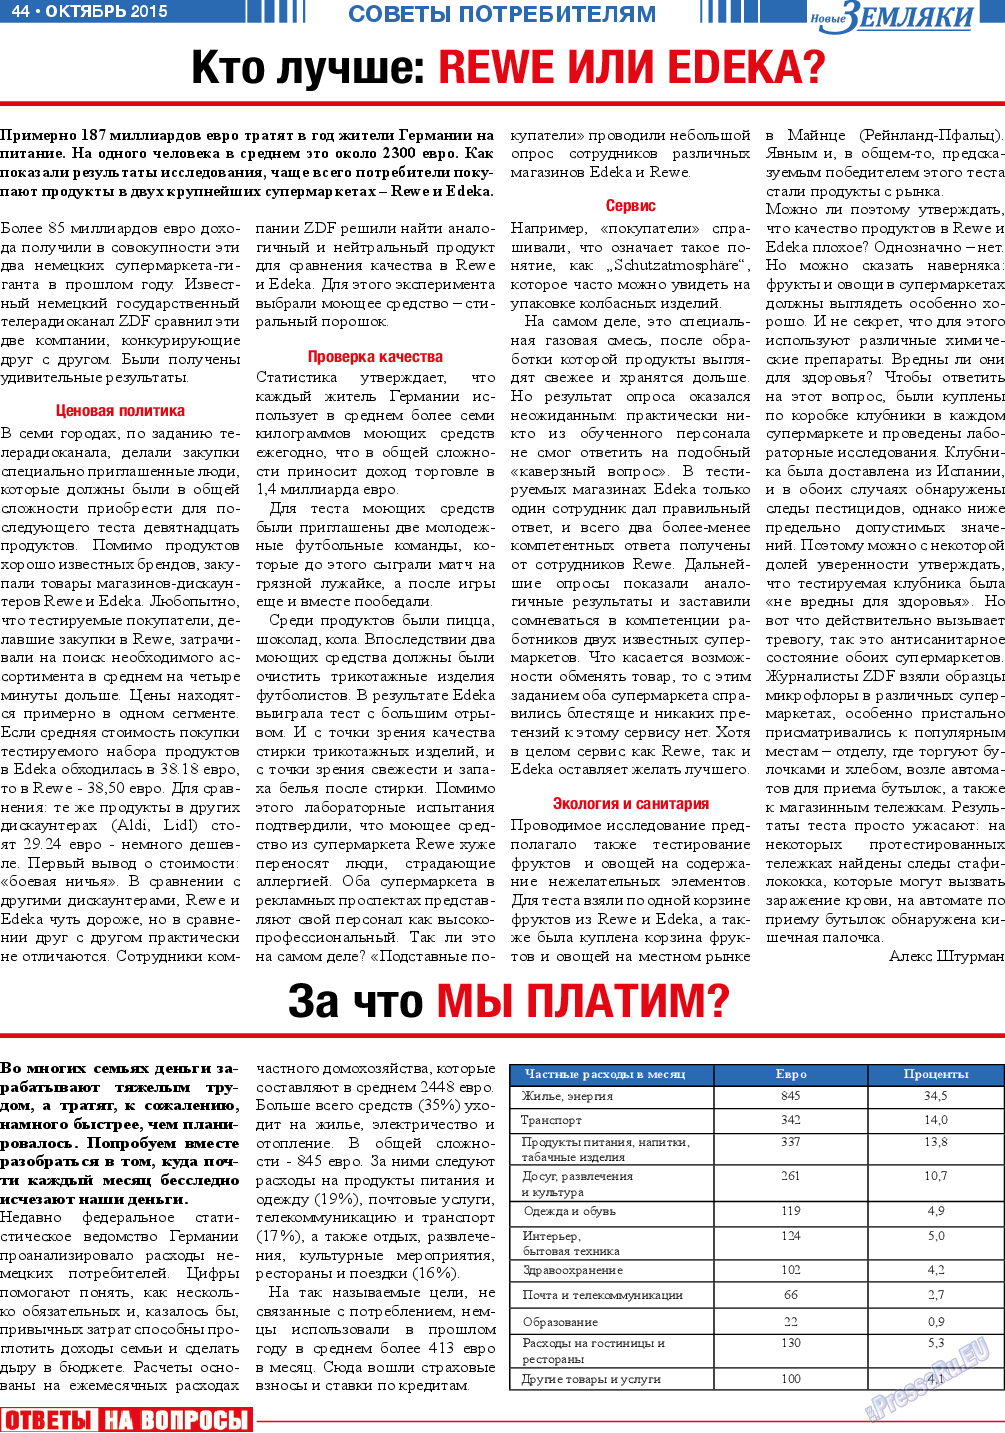 Новые Земляки (газета). 2015 год, номер 10, стр. 44